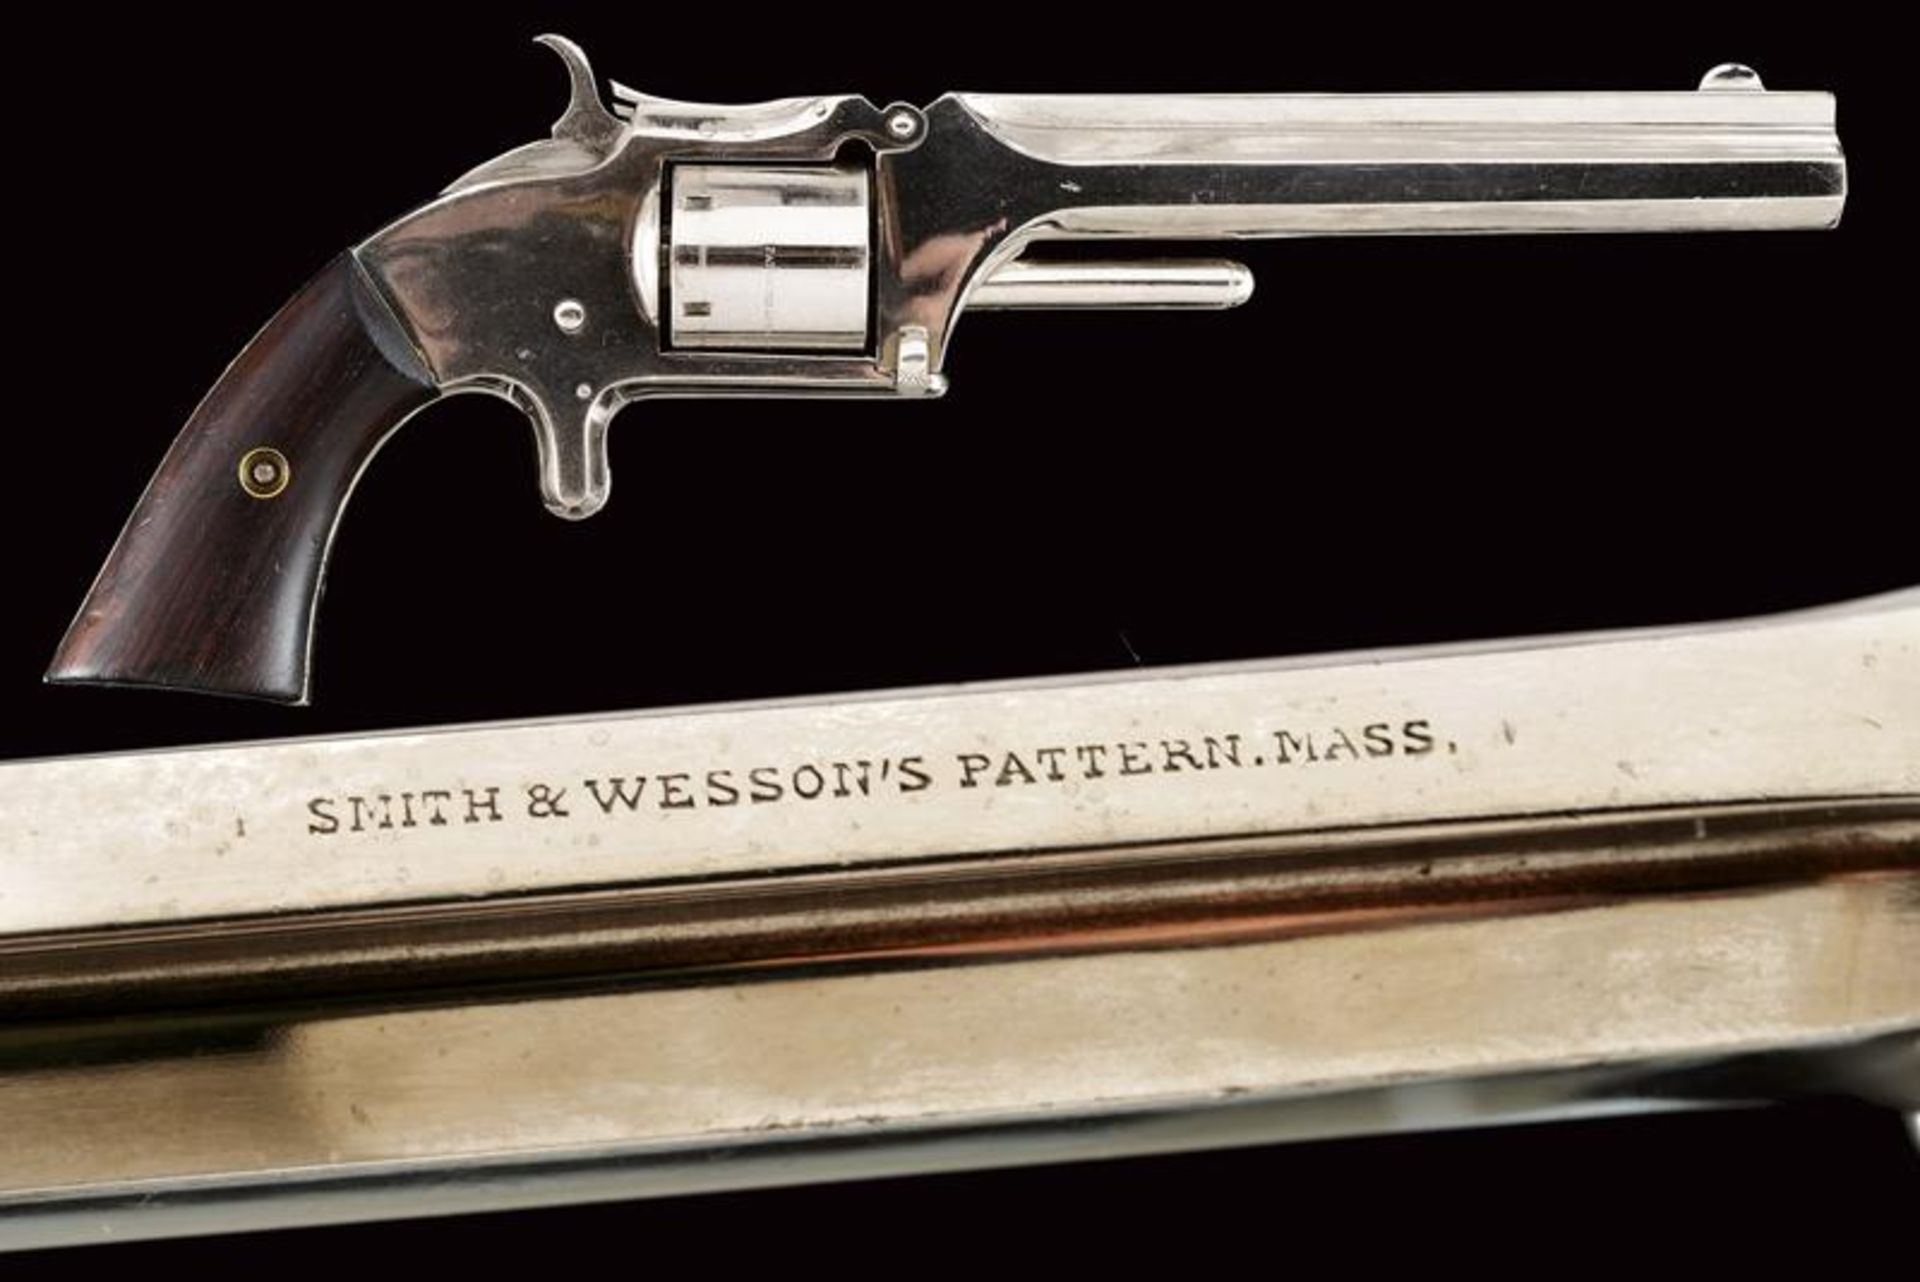 A fine S&W type rimfire revolver